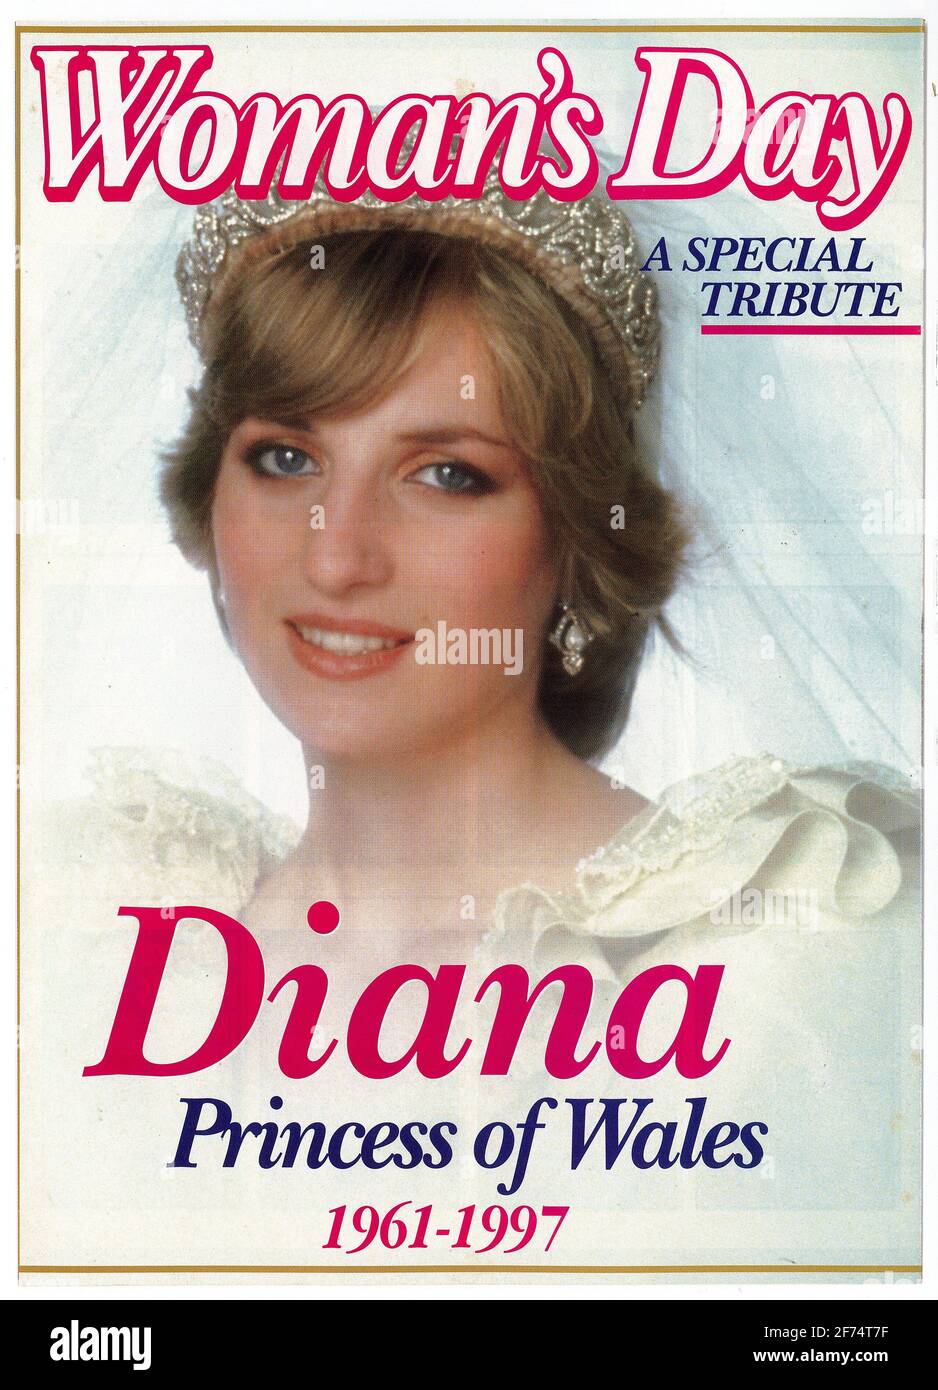 Titelbild des australischen Woman's Day Magazins vom 15. September 1997 als Tribut an Diana, Prinzessin von Wales Stockfoto